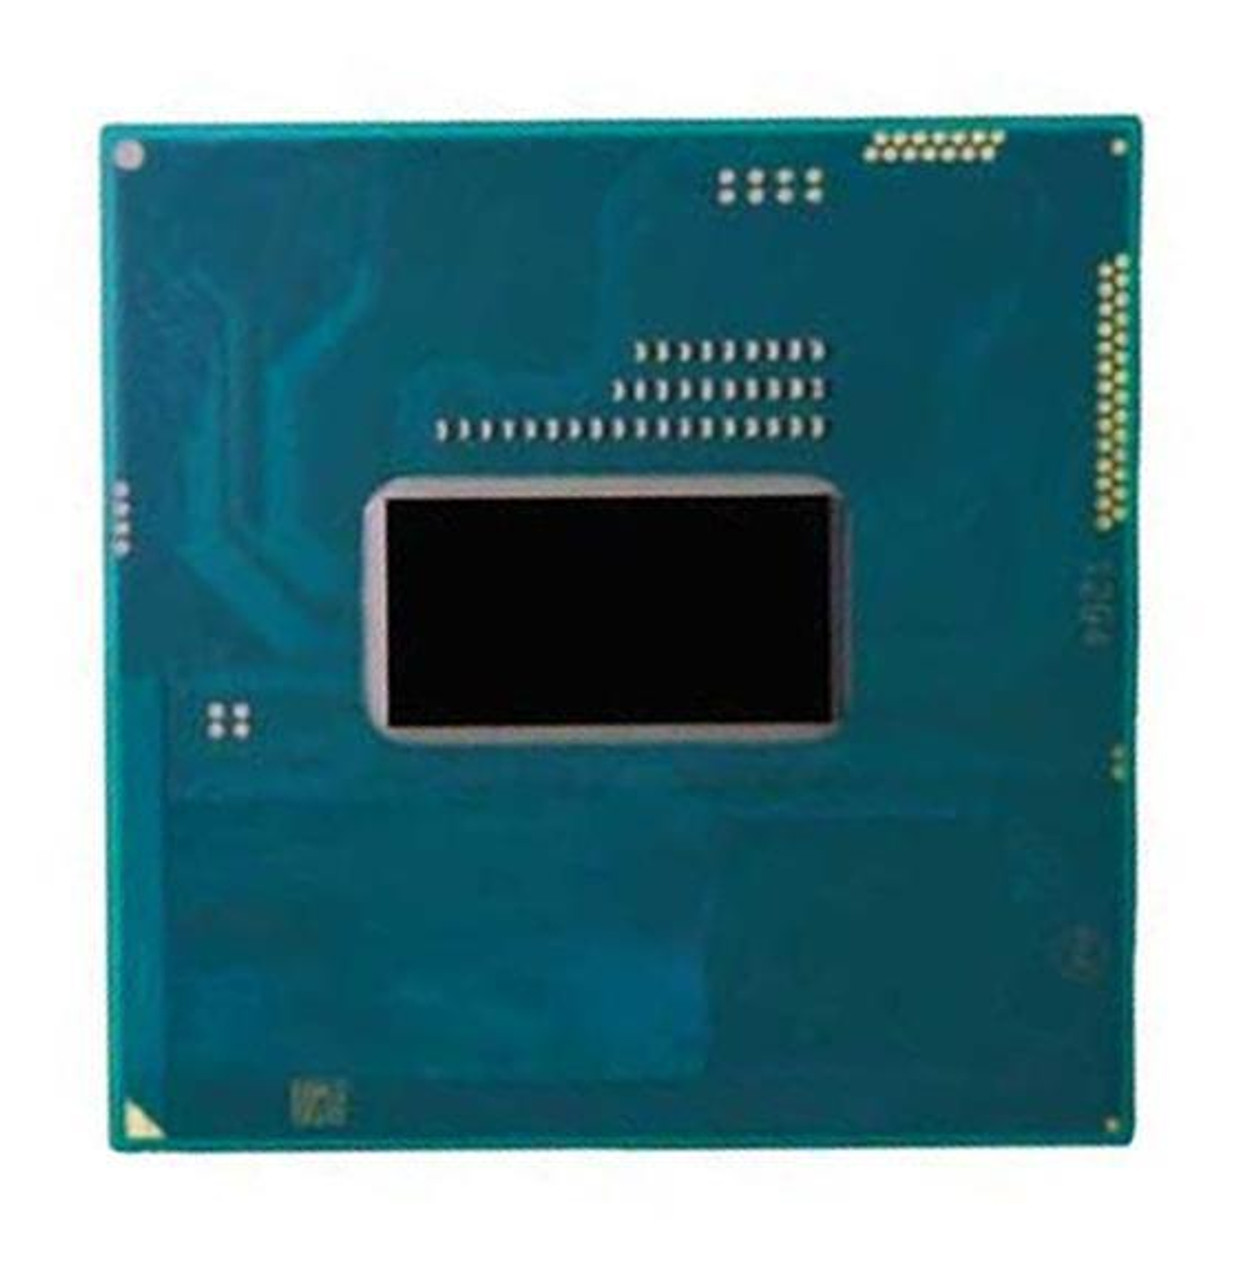 CW8064701484702S Intel Core i3-4000M Dual-Core 2.40GHz 5.00GT/s DMI2 3MB L3 Cache Socket PGA946 Mobile Processor